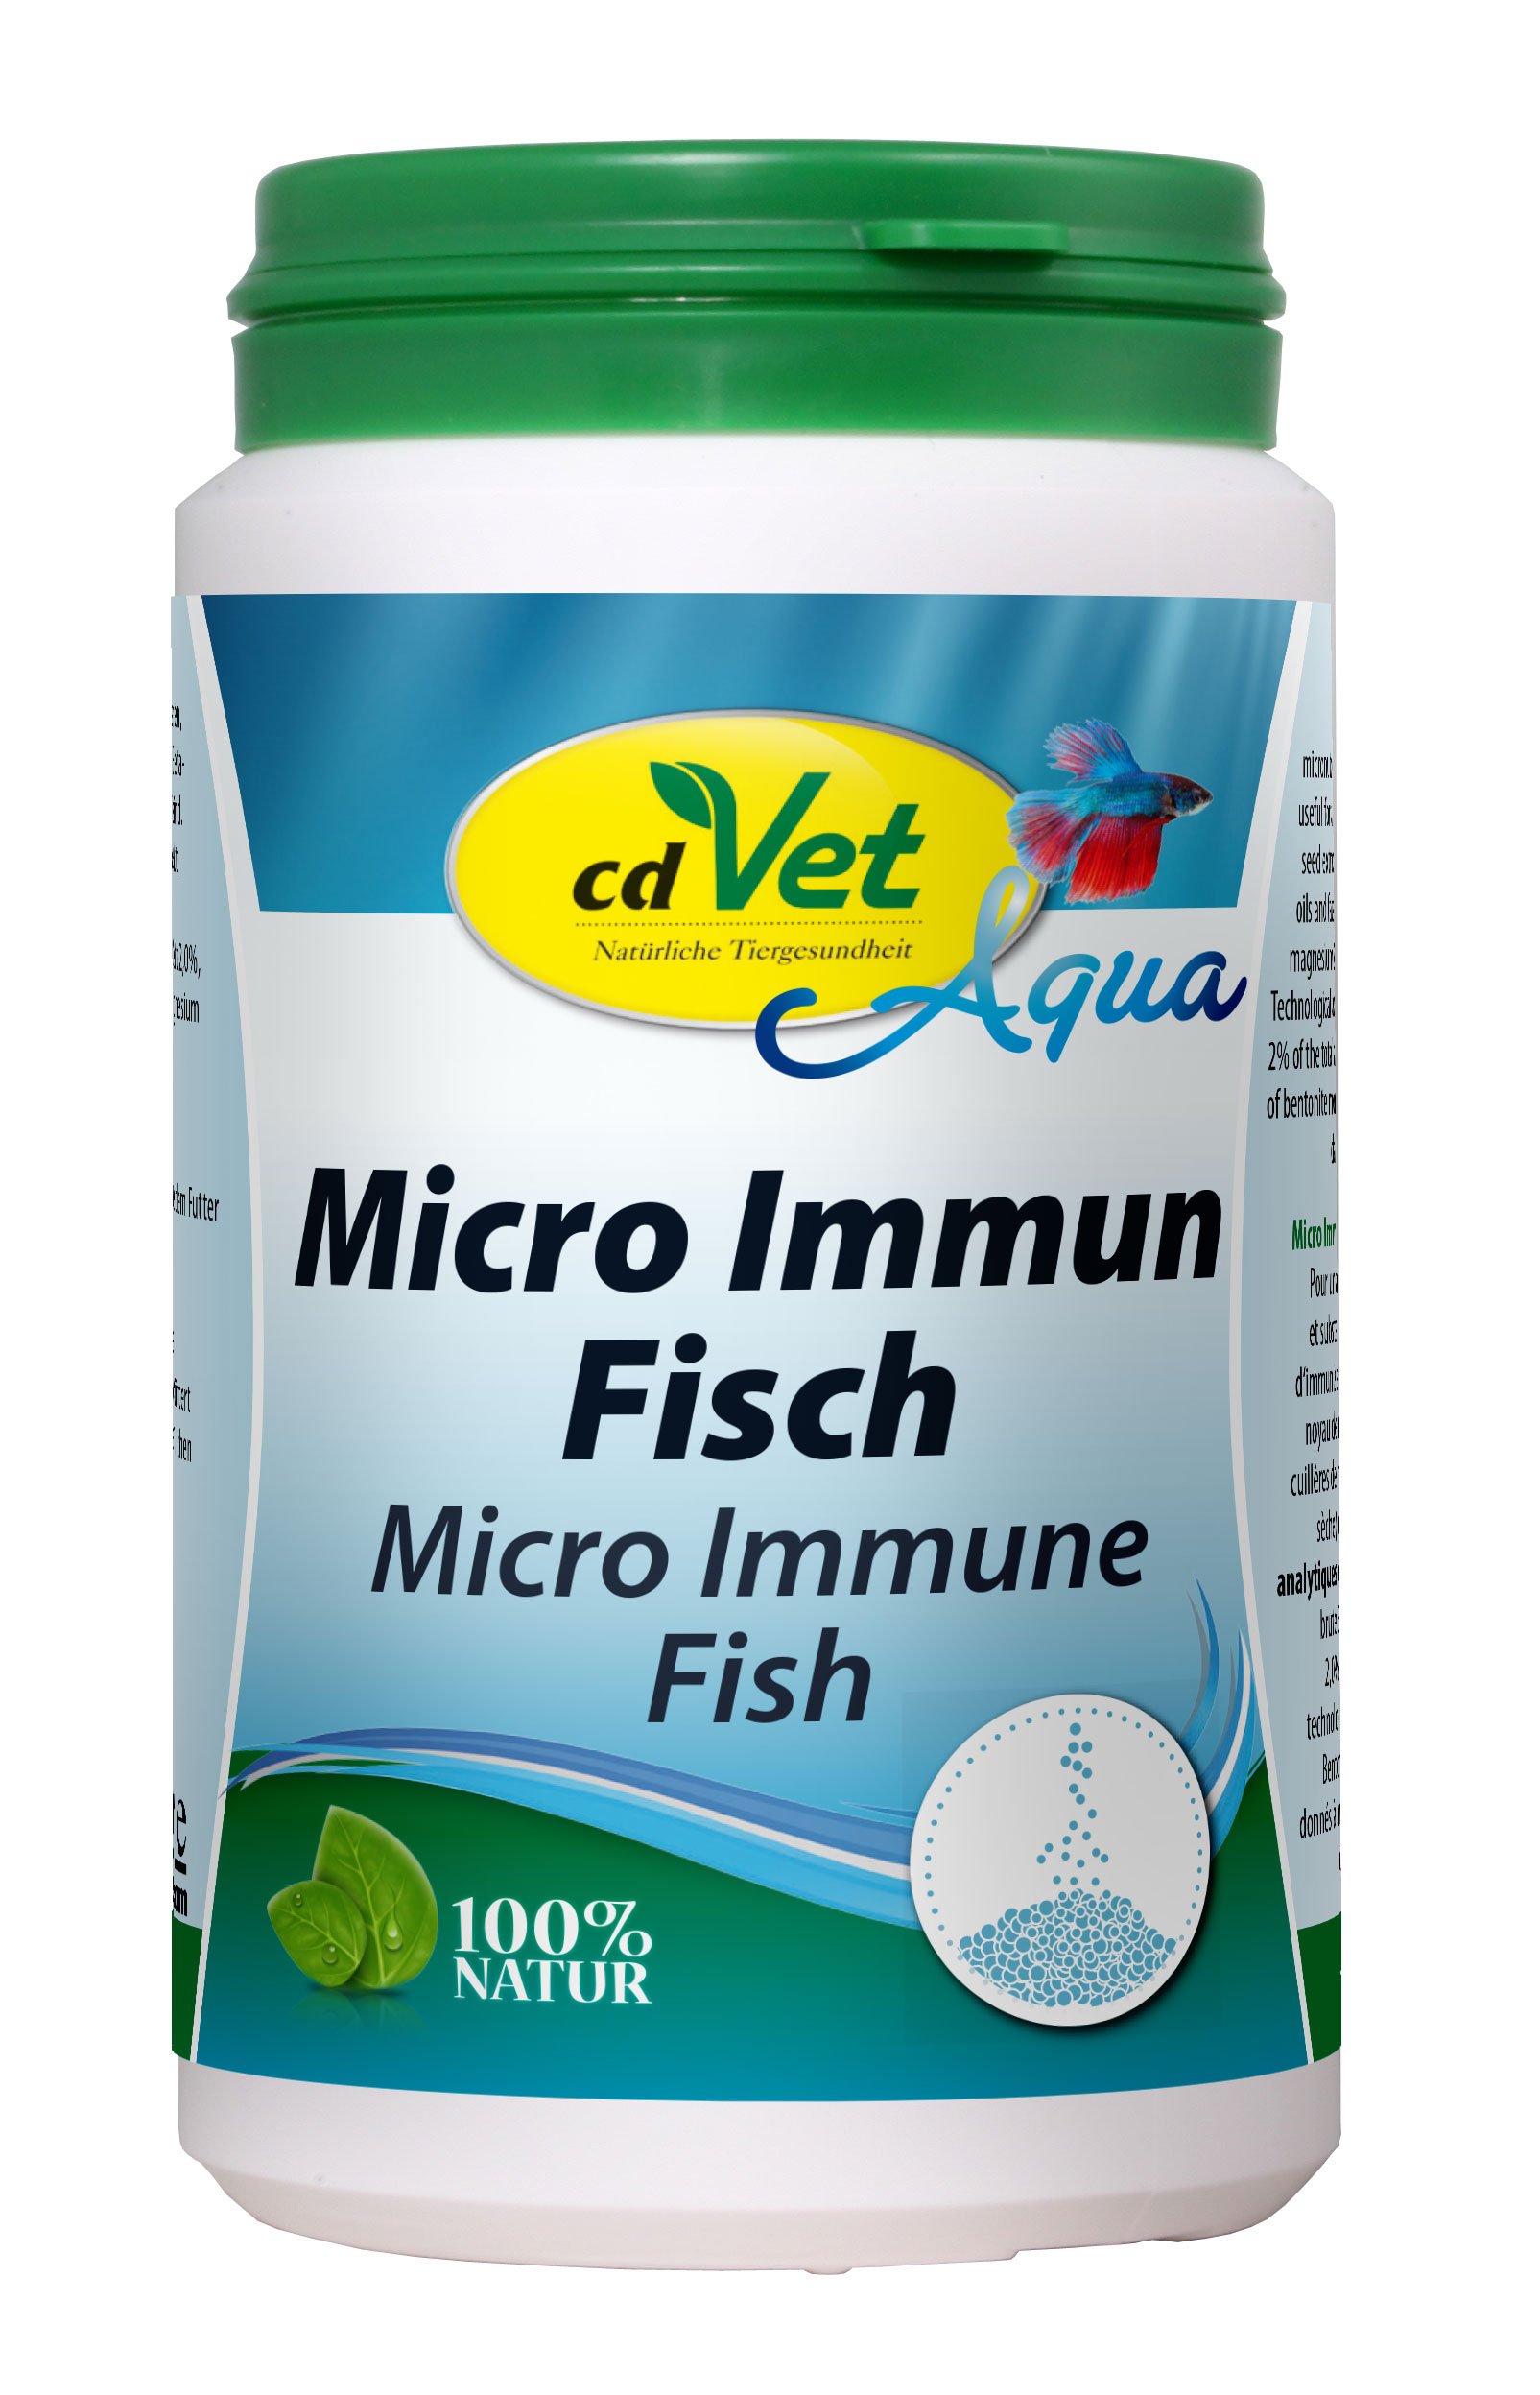 MicroImmun Fisch 200g für ein starkes Immunsystem